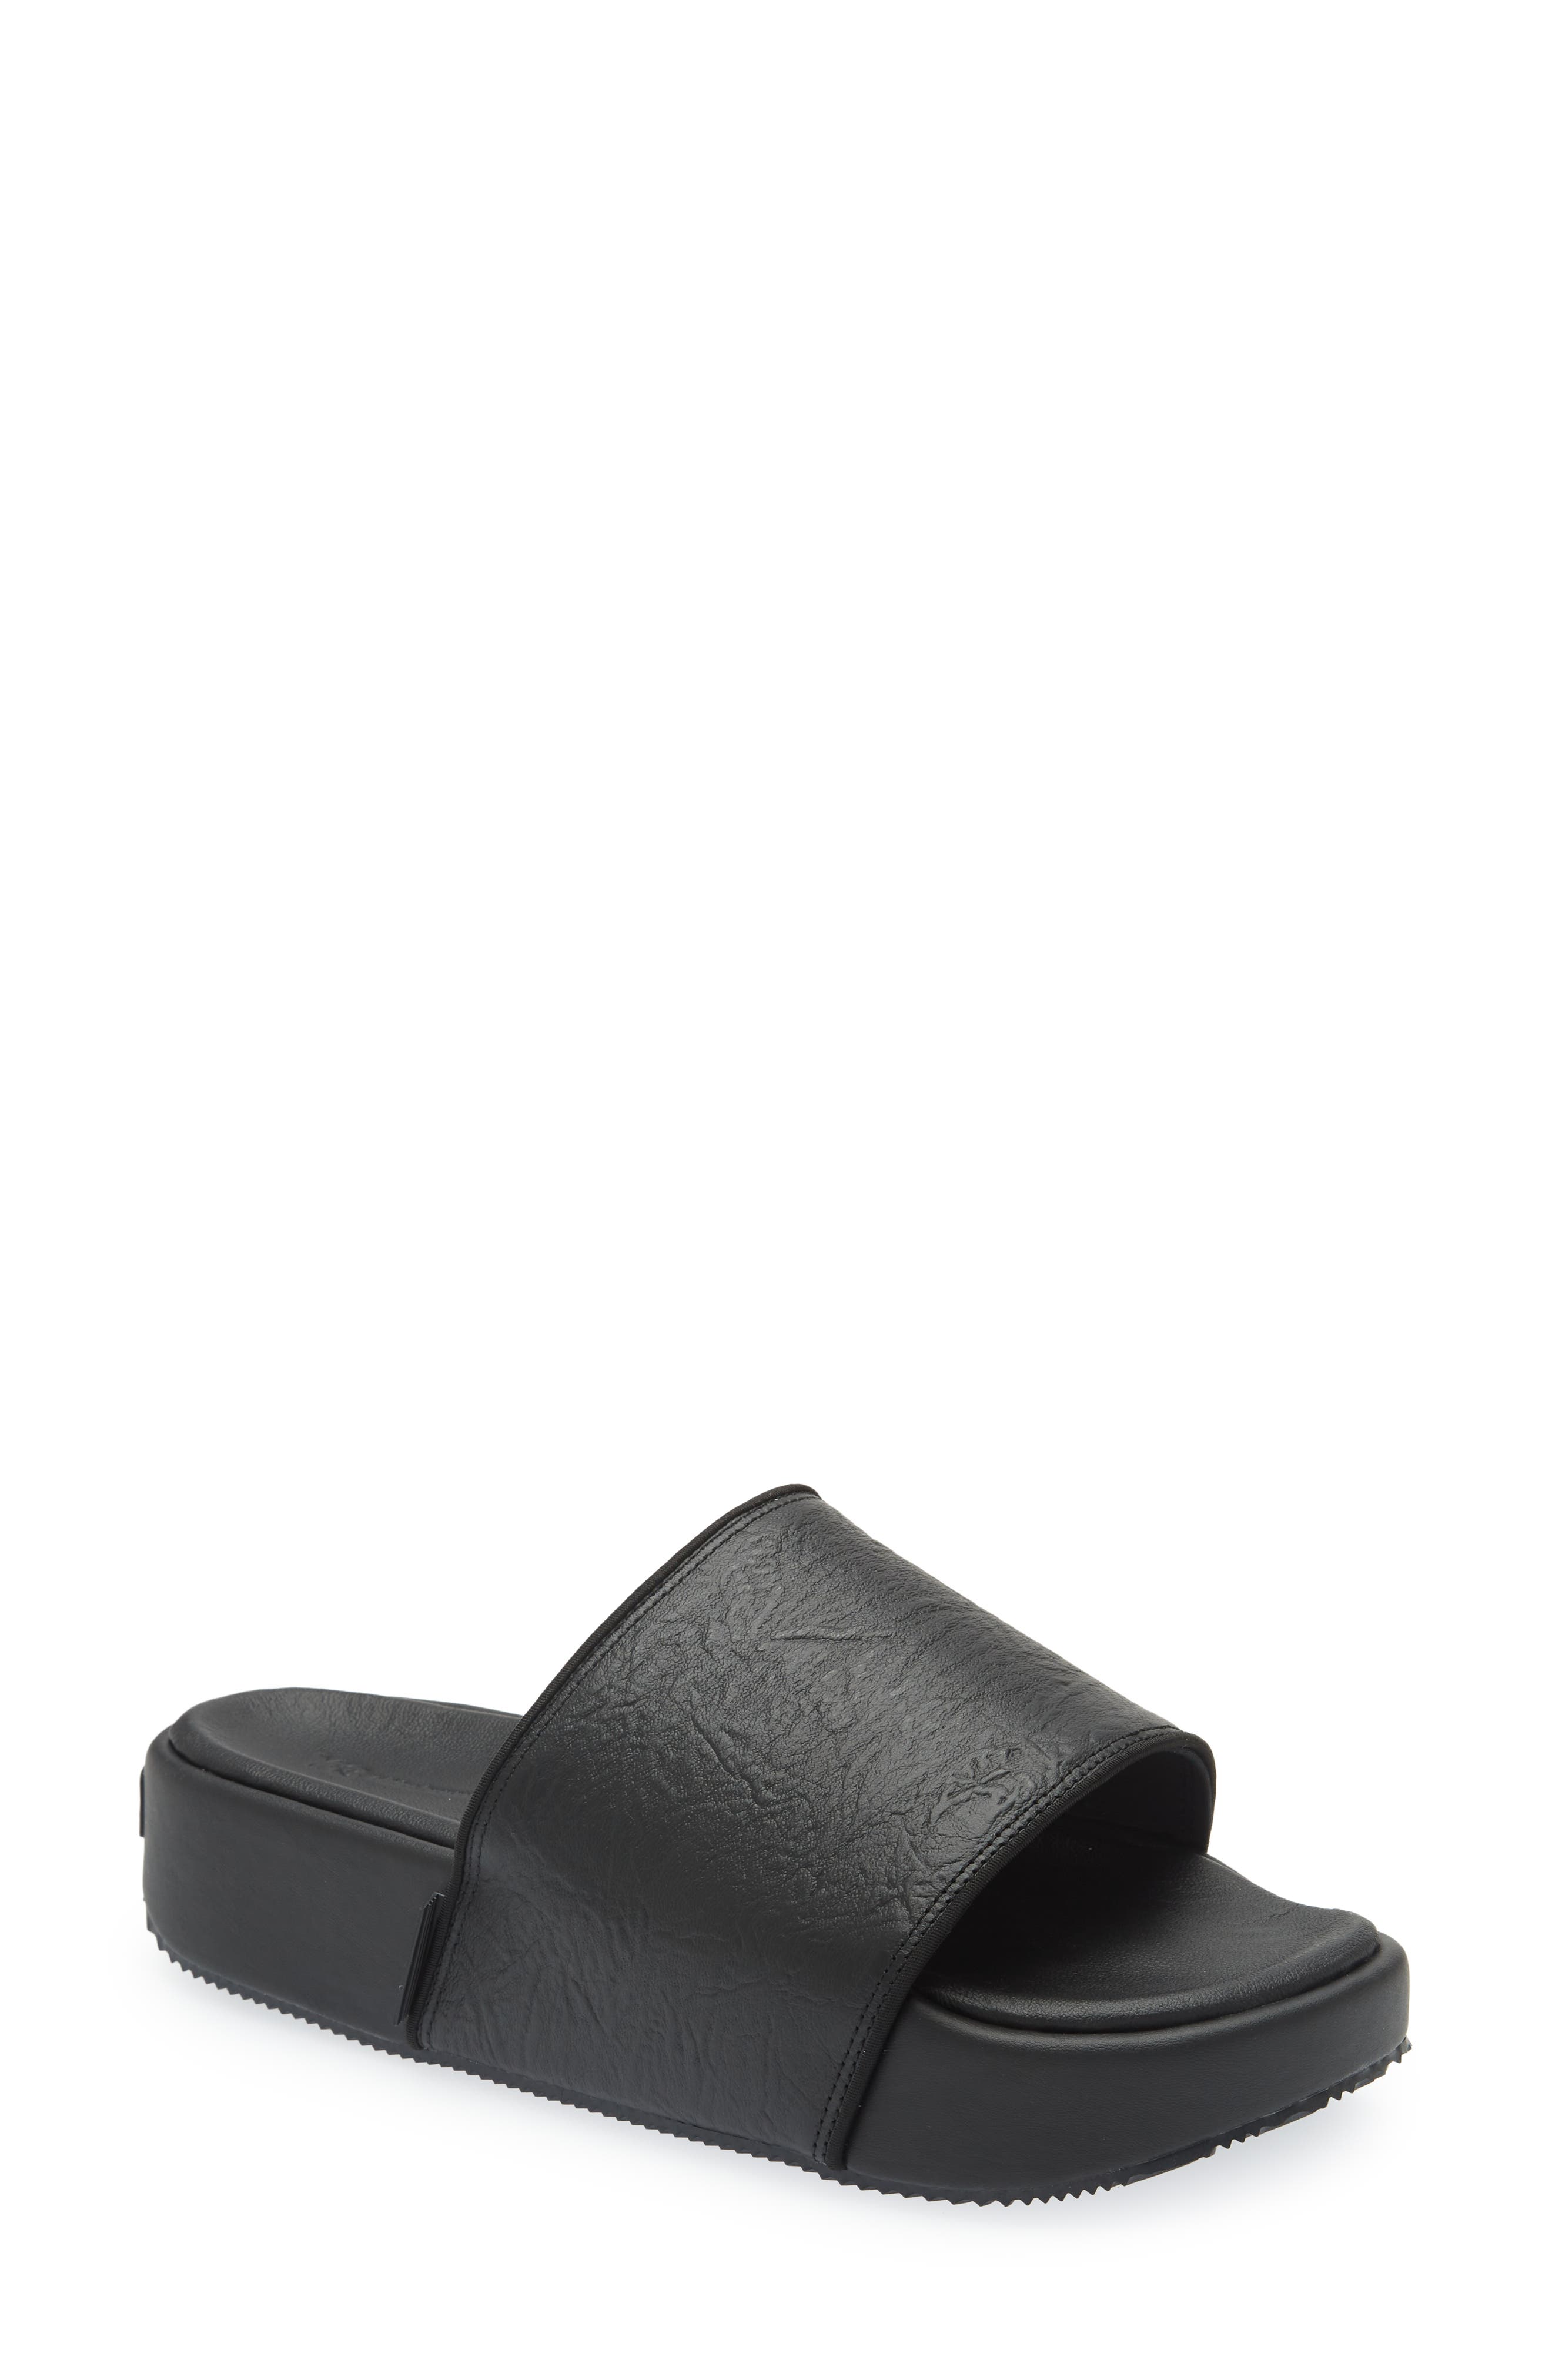 Y-3 Leather Platform Slide Sandal in Black/Black/Corewhite at Nordstrom, Size 11